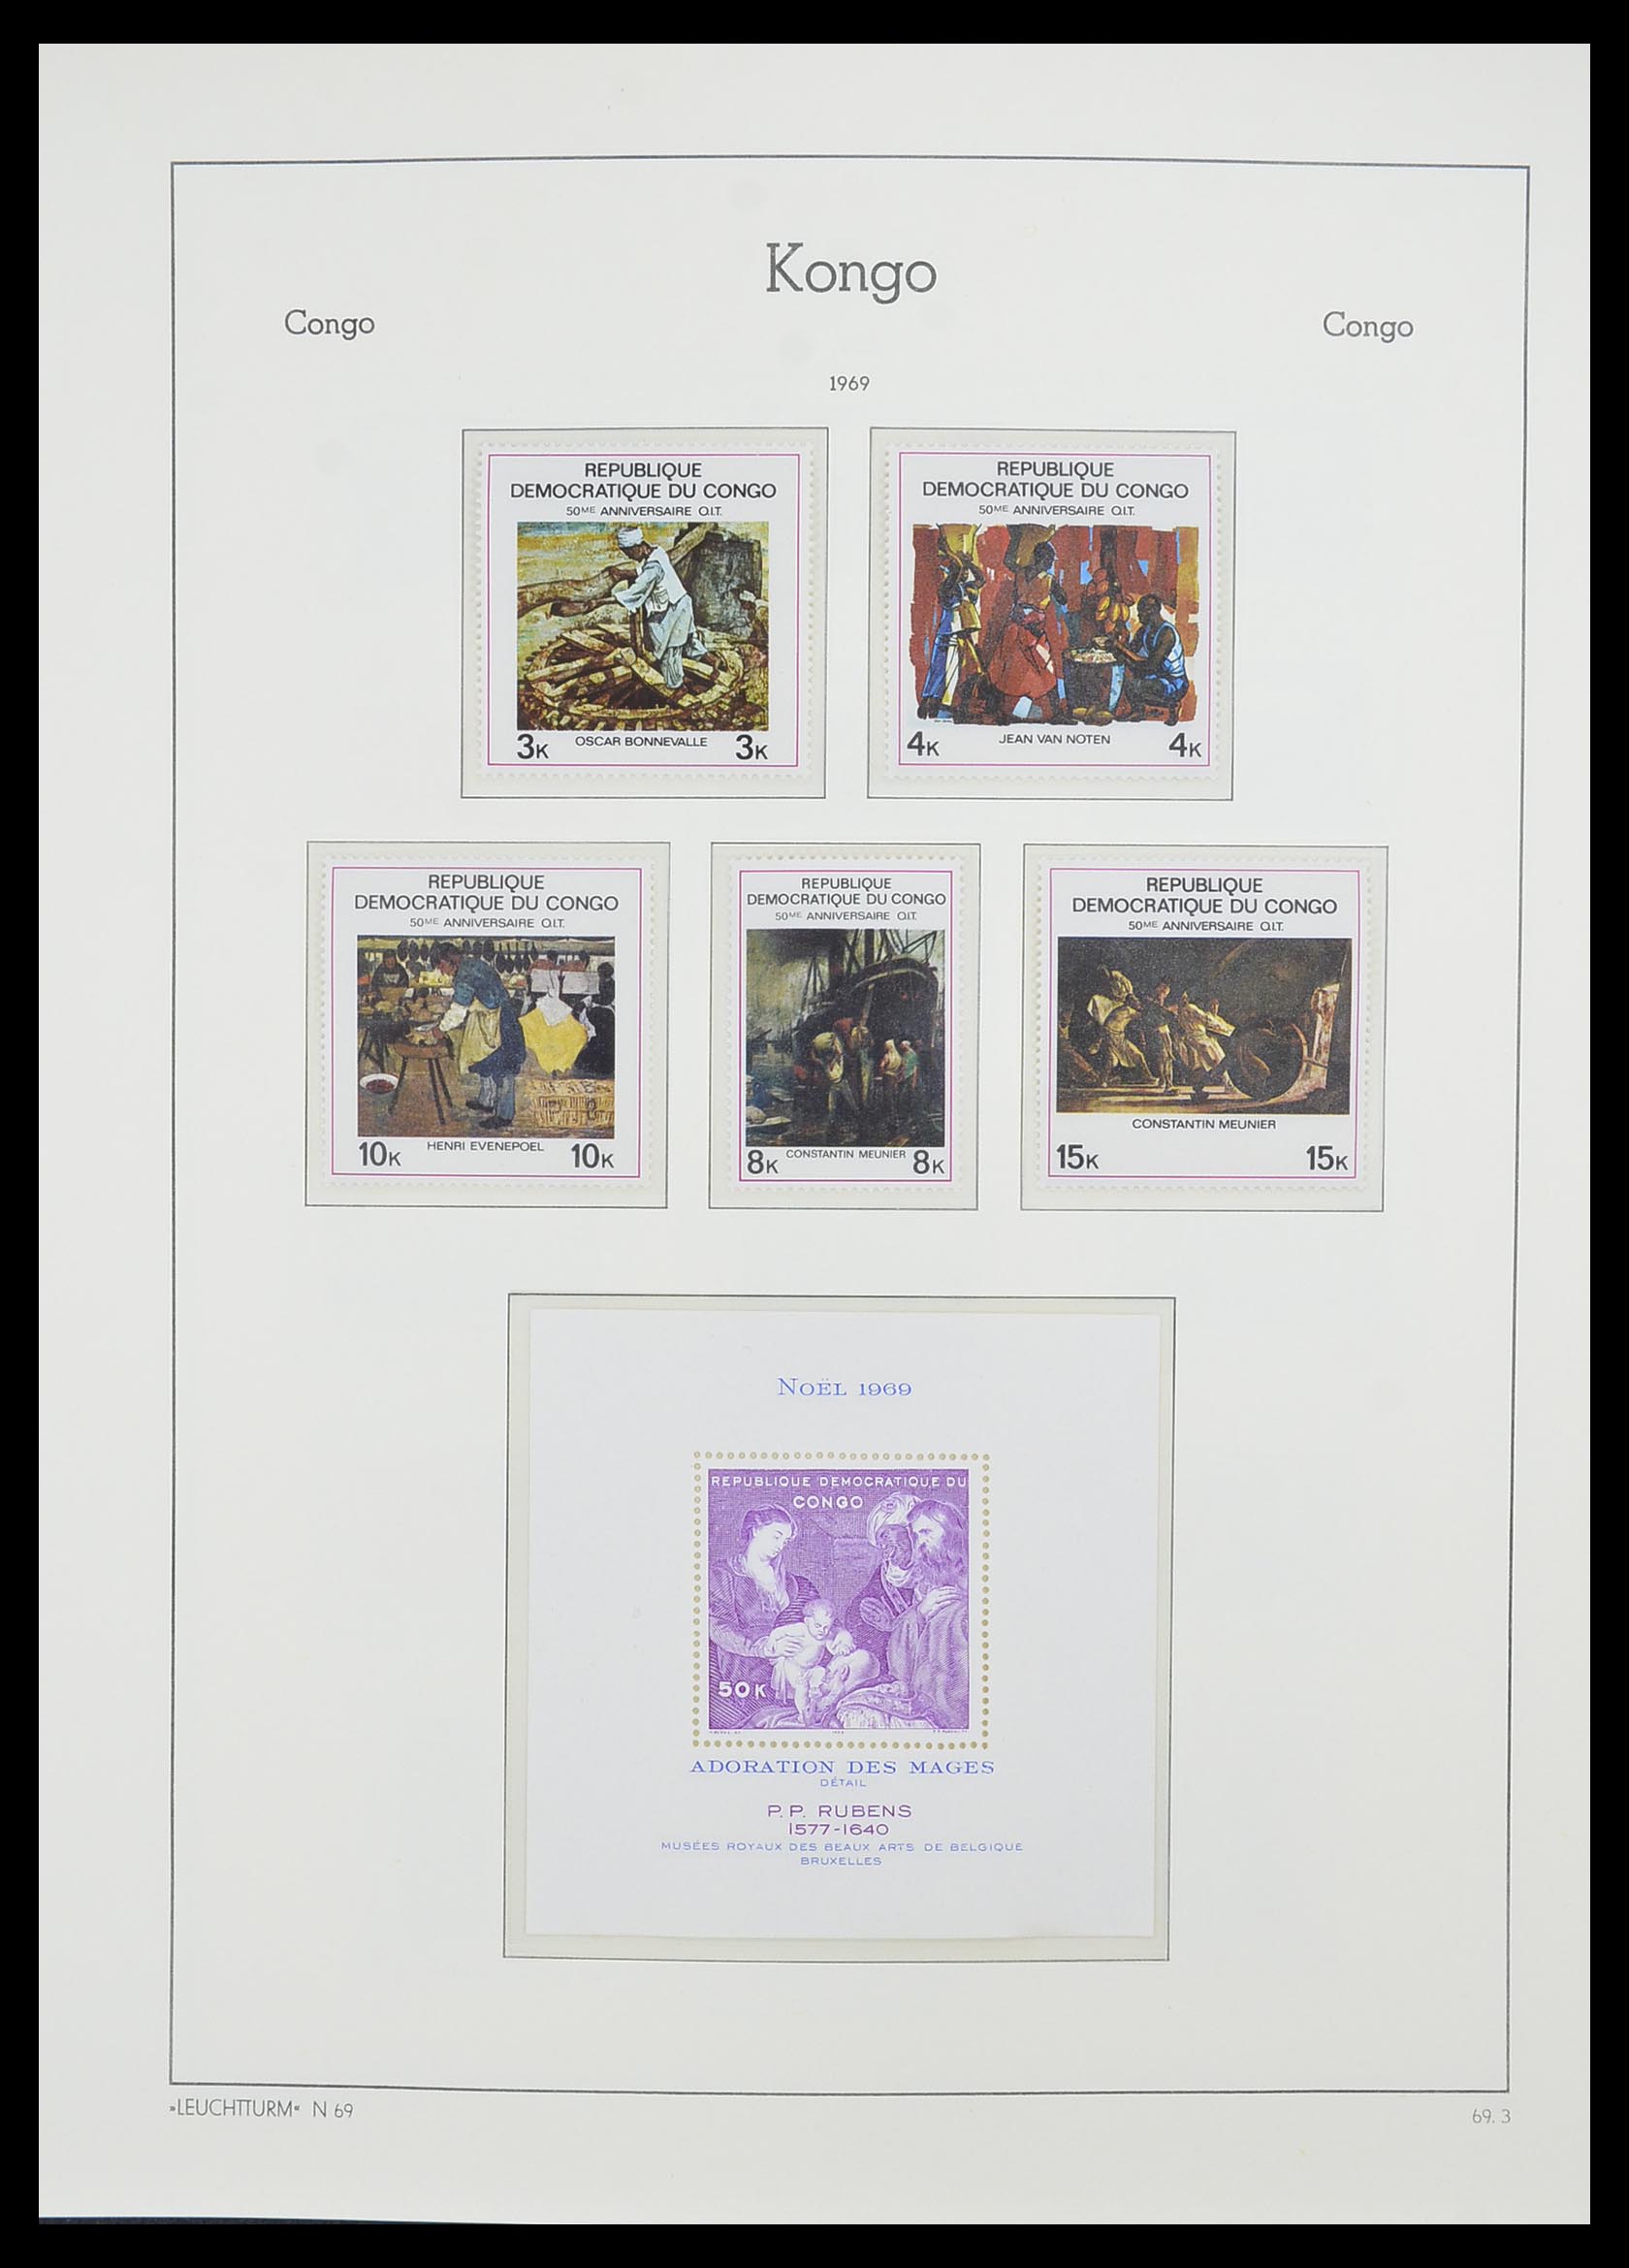 33768 044 - Stamp collection 33768 Congo/Zaïre 1960-2006.